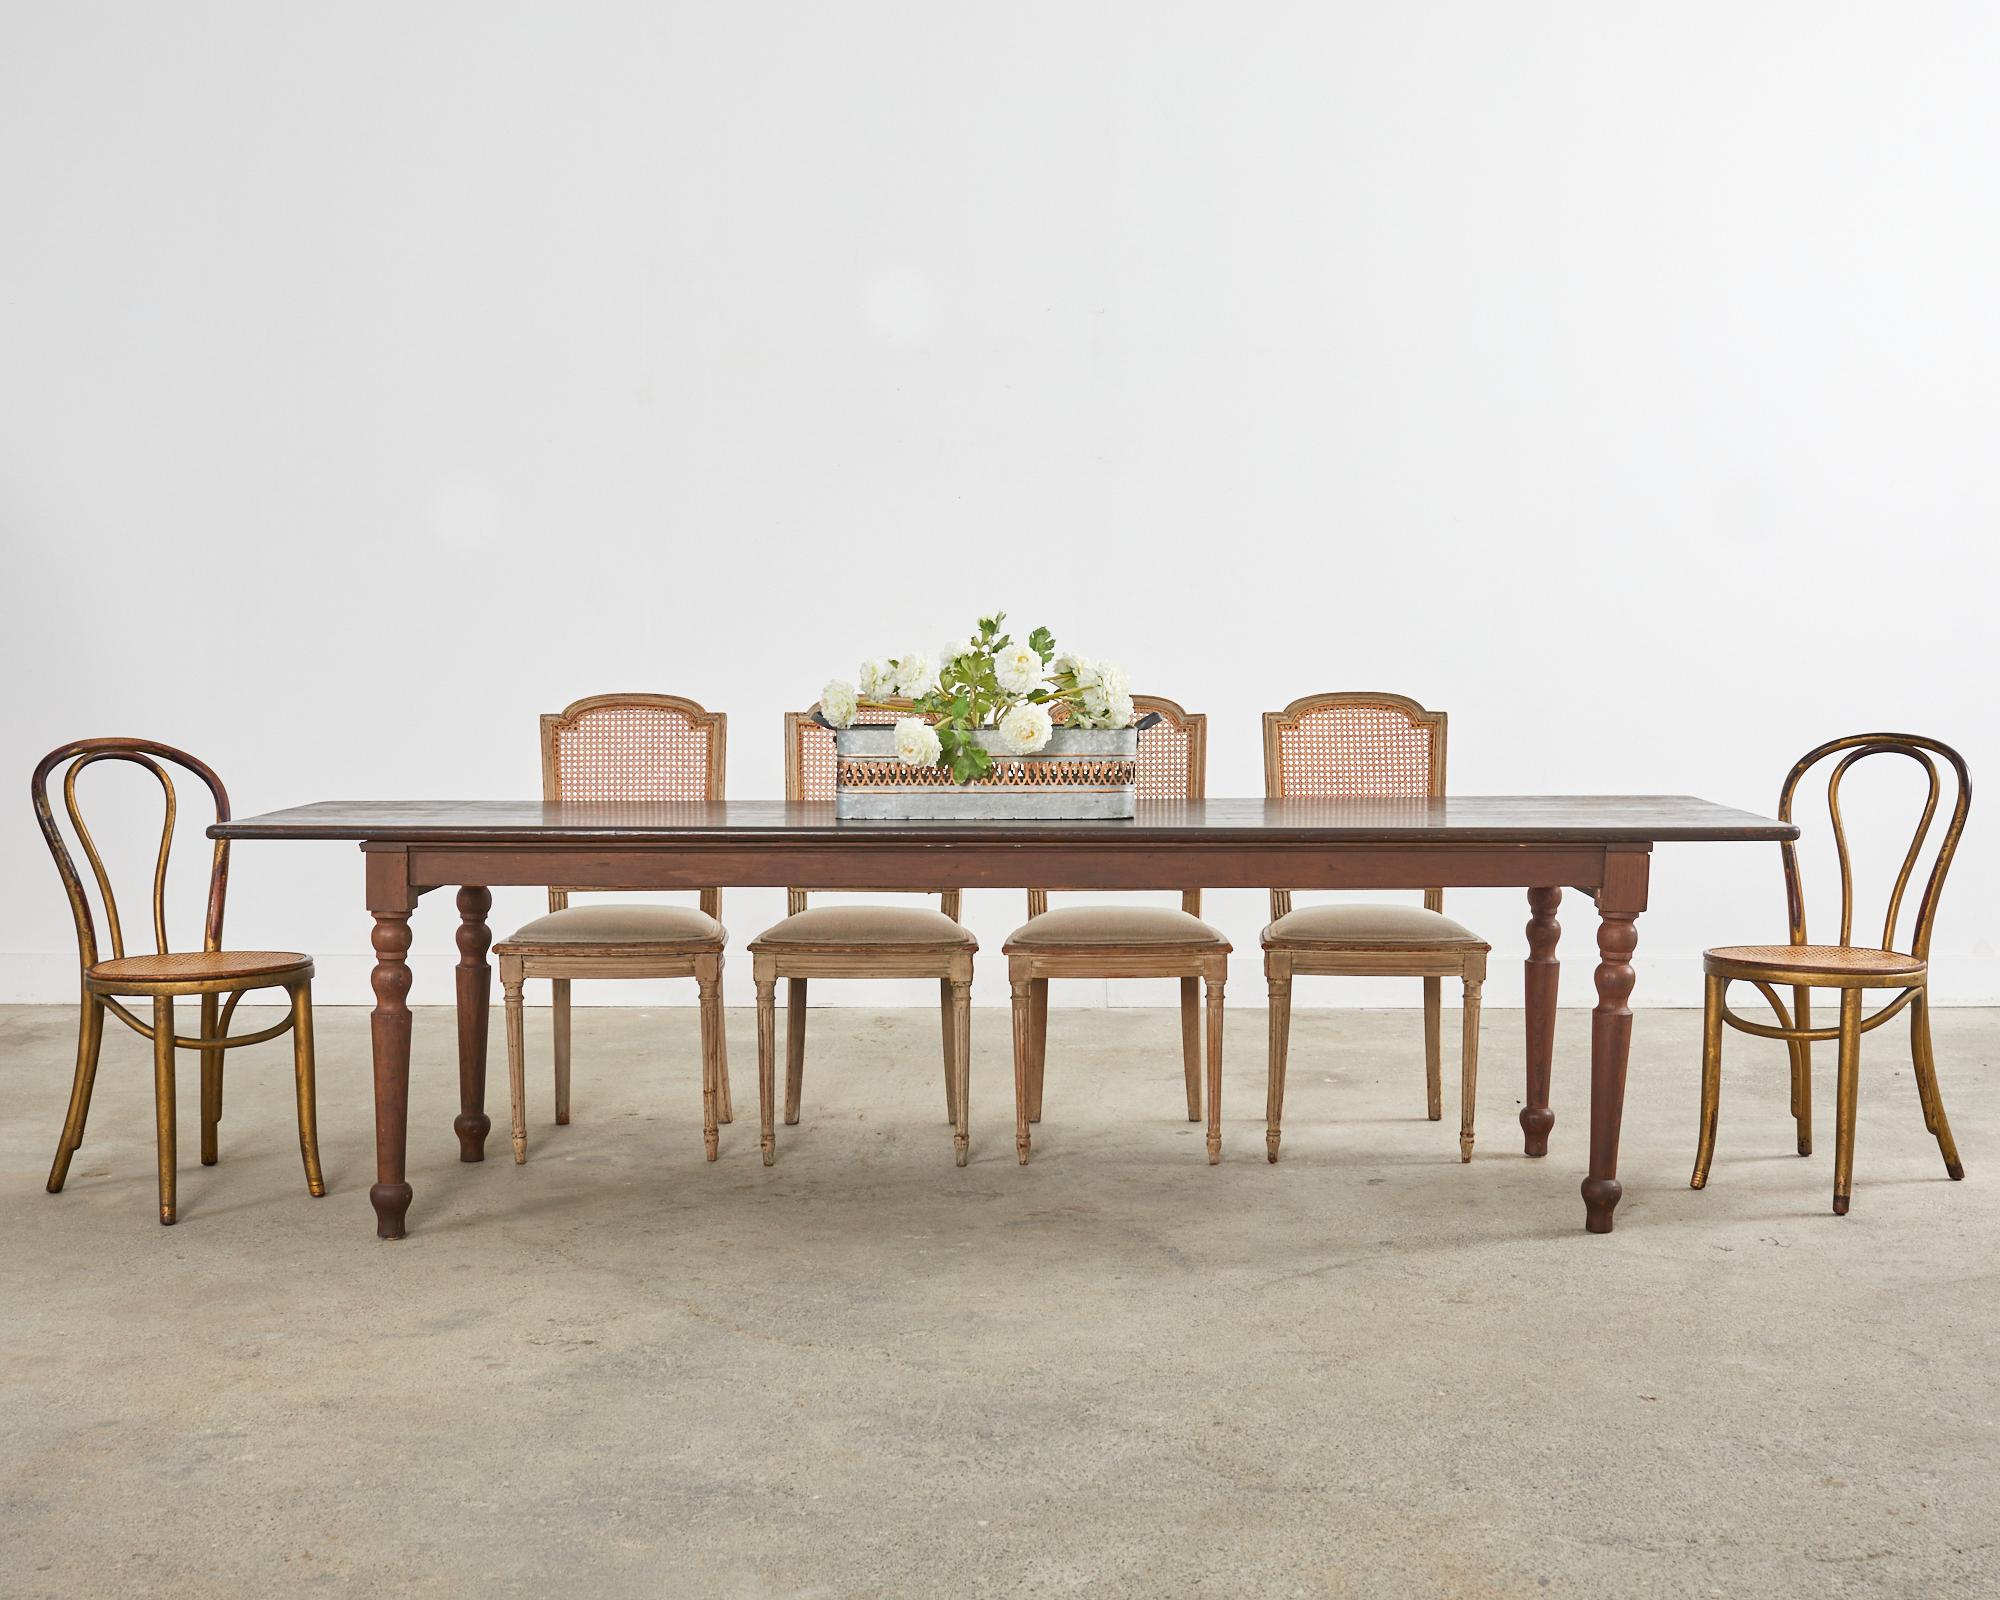 Magnifique ensemble de quatre chaises de salle à manger du 19e siècle peintes et patinées, dans le goût suédois gustavien. Les chaises sont dotées d'un cadre sculpté et d'un dossier arqué. Les sièges ont un devant arqué et ont été récemment